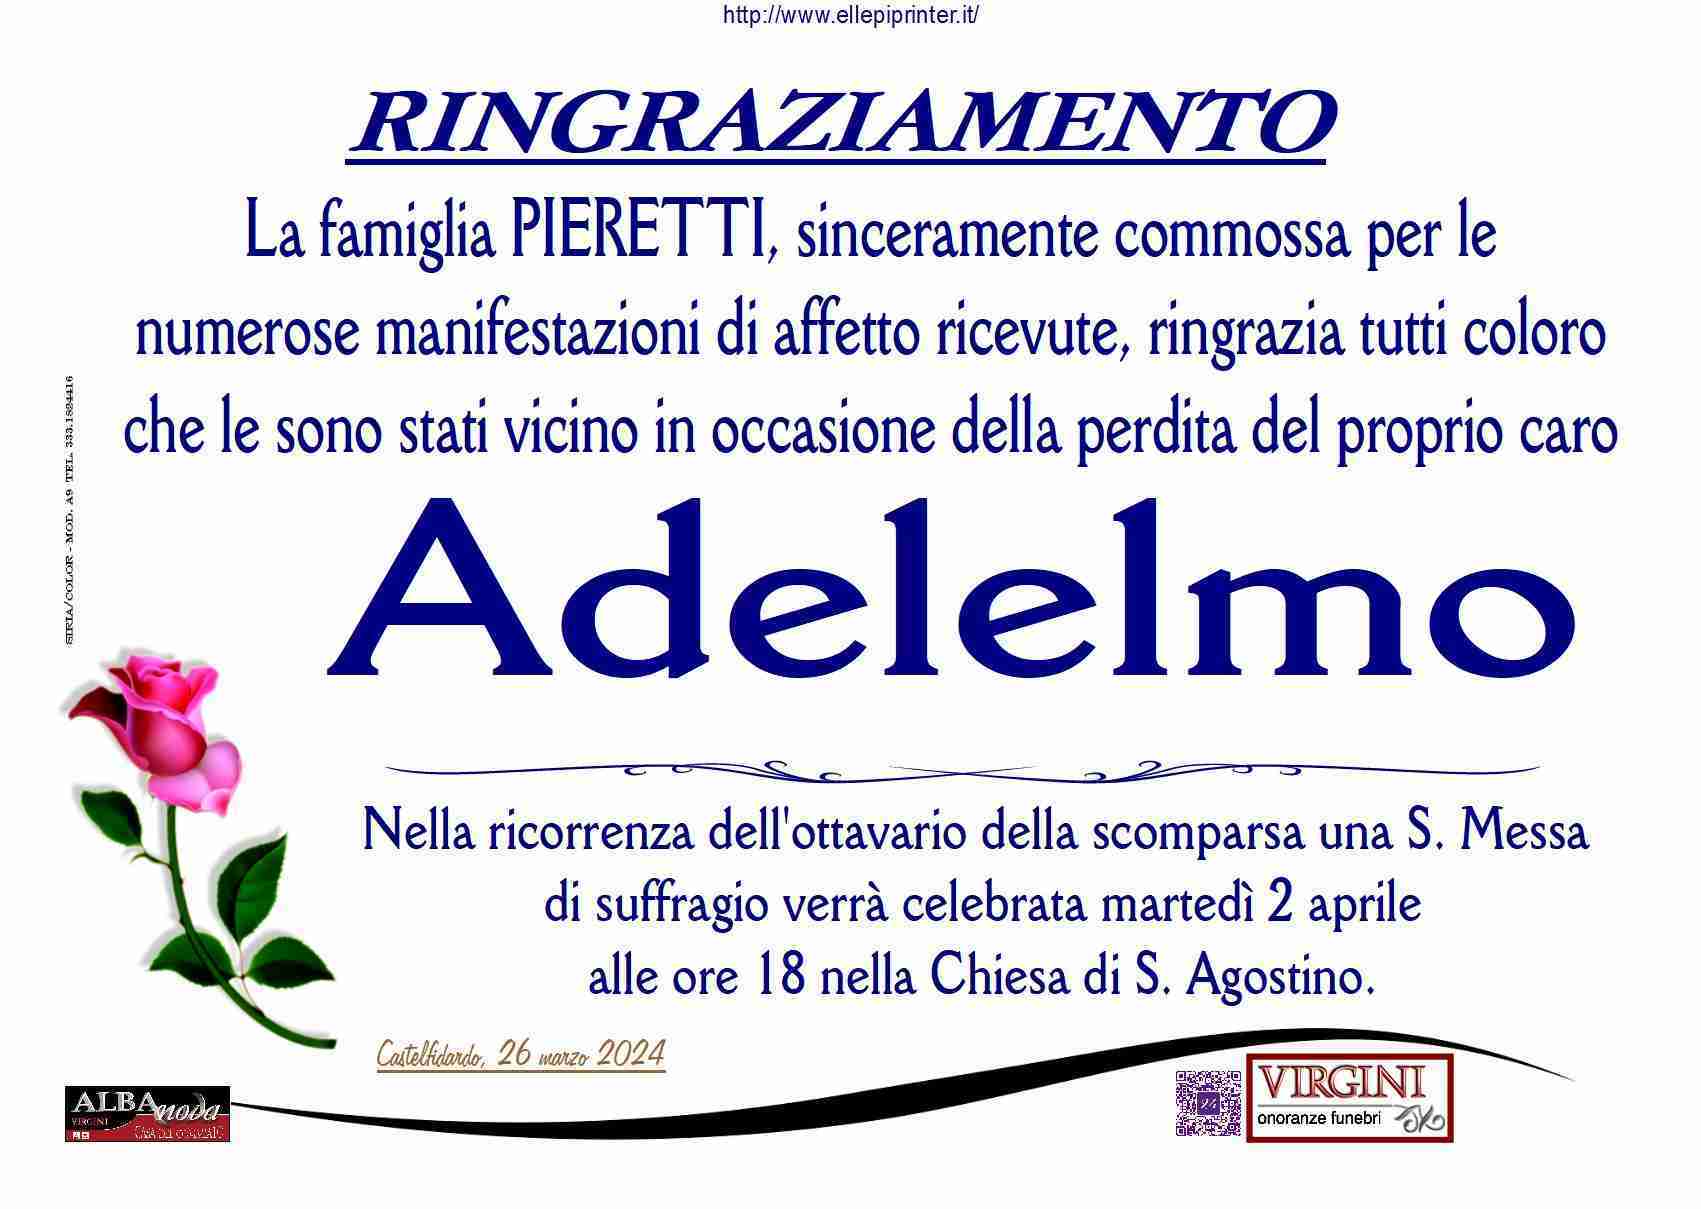 Adelelmo Pieretti